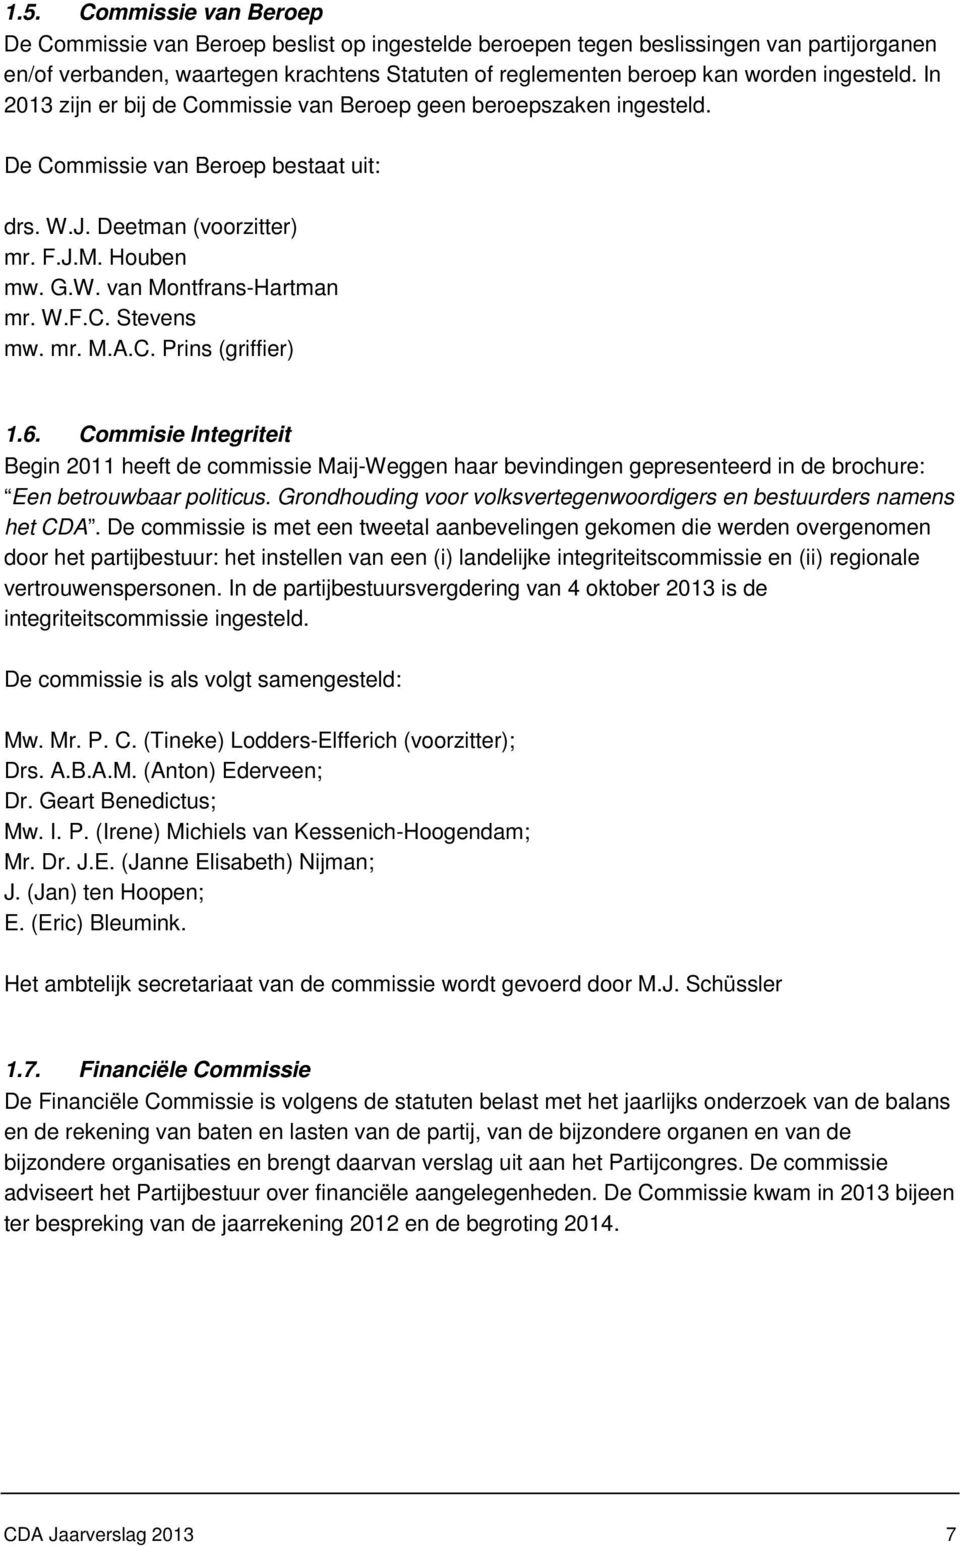 W.F.C. Stevens mw. mr. M.A.C. Prins (griffier) 1.6. Commisie Integriteit Begin 2011 heeft de commissie Maij-Weggen haar bevindingen gepresenteerd in de brochure: Een betrouwbaar politicus.